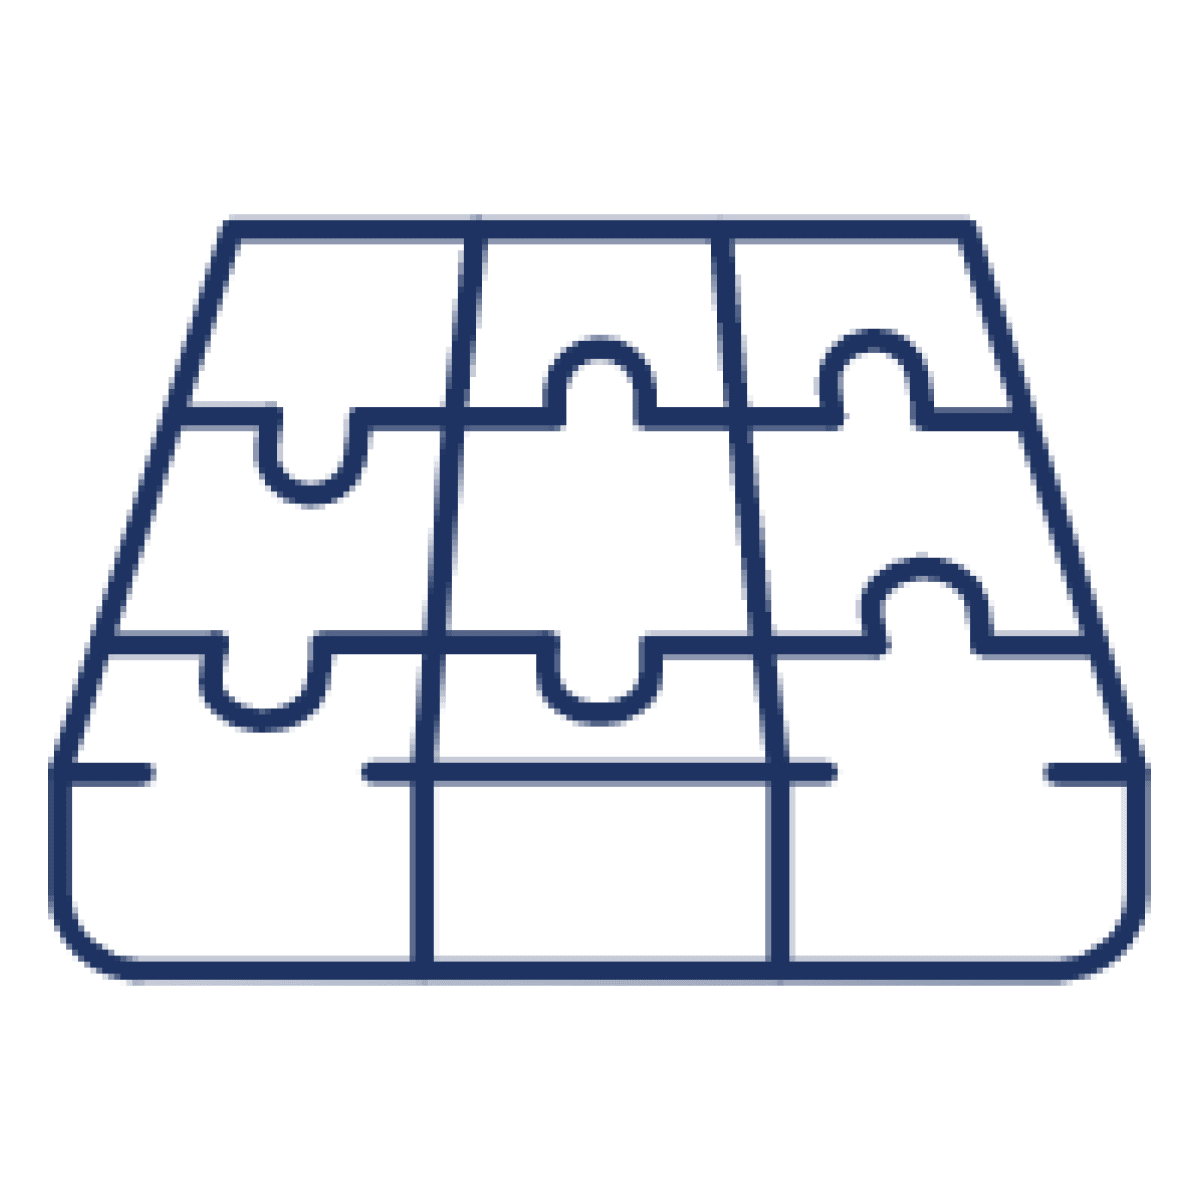 Dark blue mattress puzzle icon